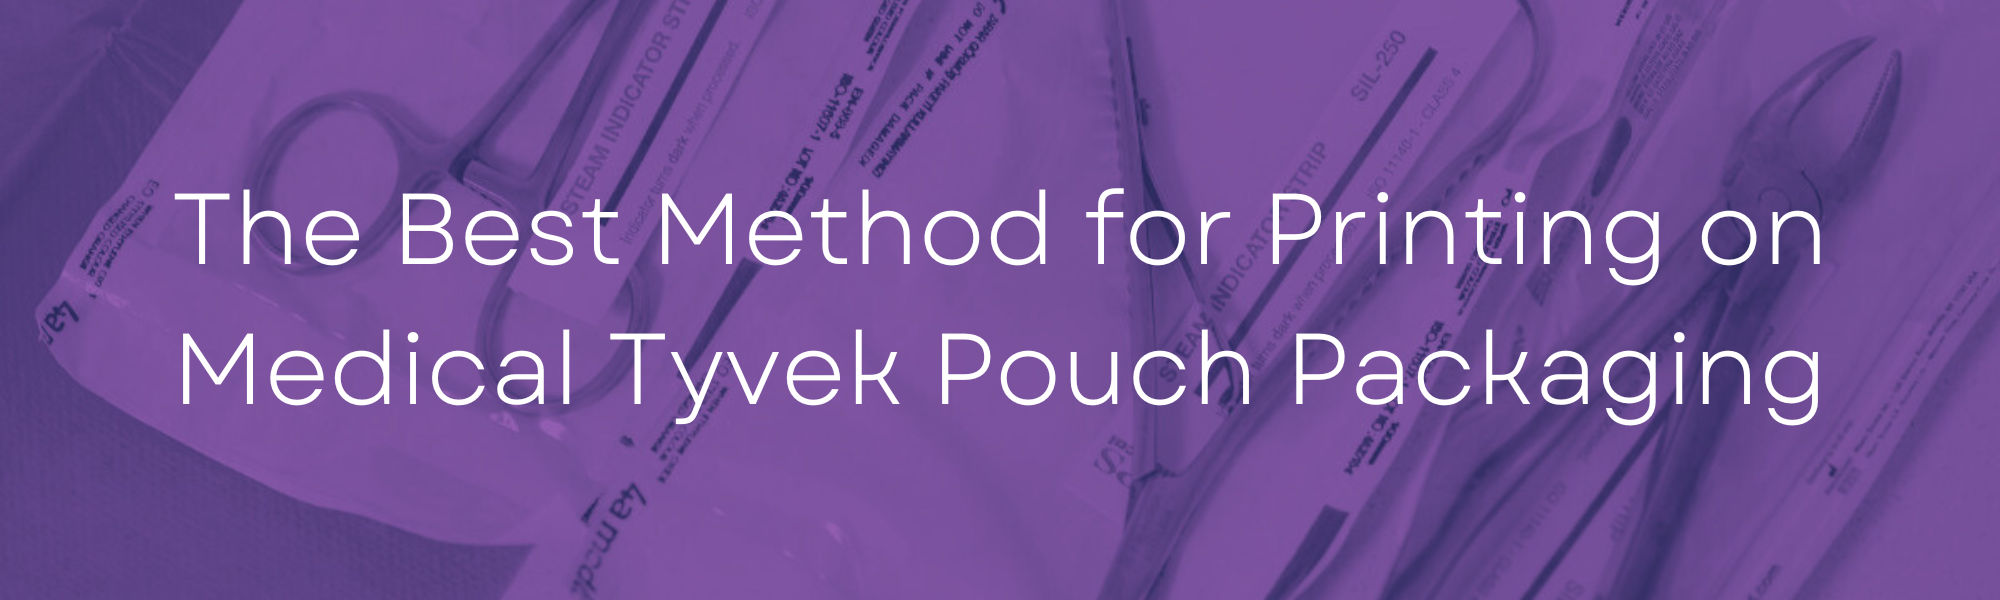 Medical Tyvek Packaging Blog Header